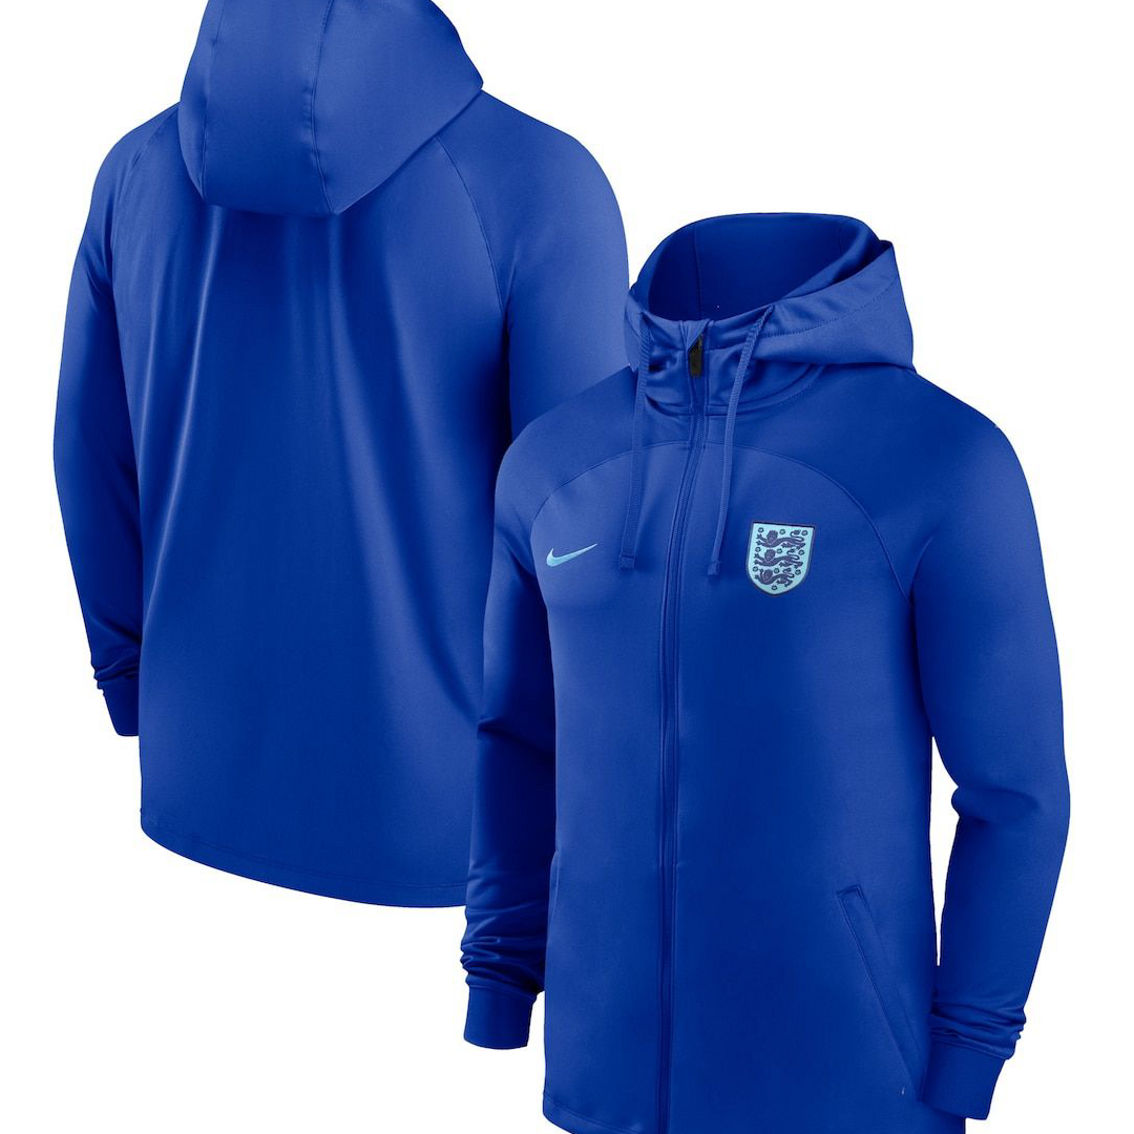 Nike Men's Blue England National Team Strike Raglan Hoodie Full-Zip Track Jacket - Image 2 of 4